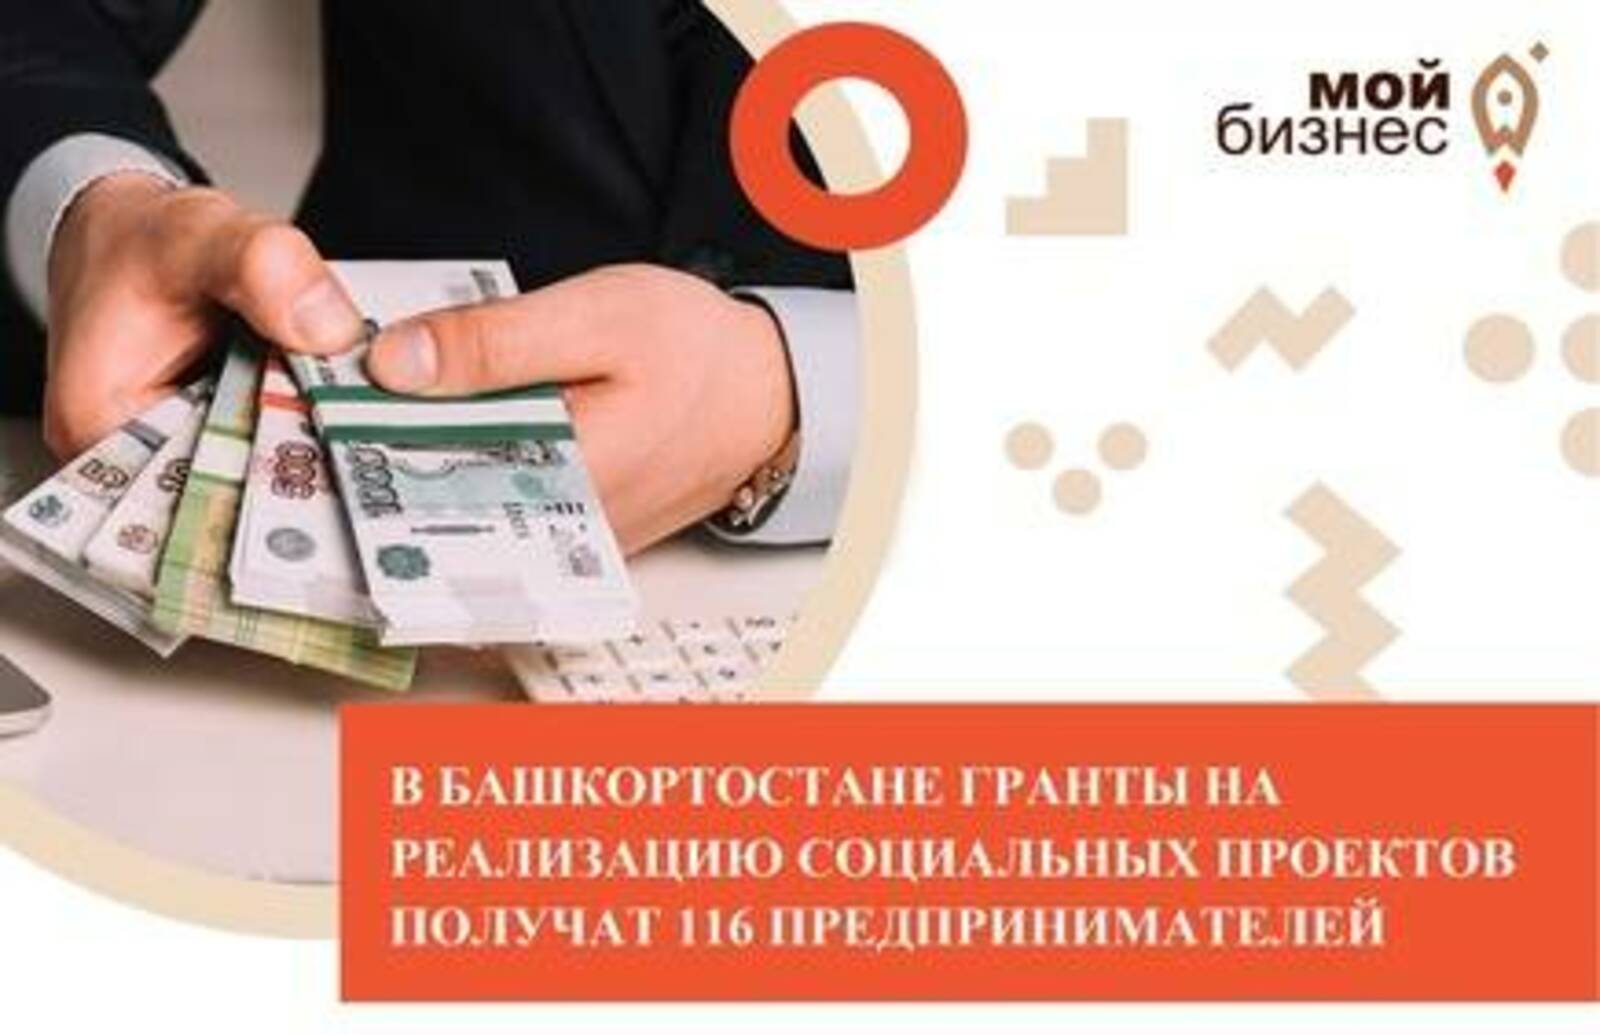 116 предпринимателей из Башкортостана получат гранты на реализацию  социальных проектов